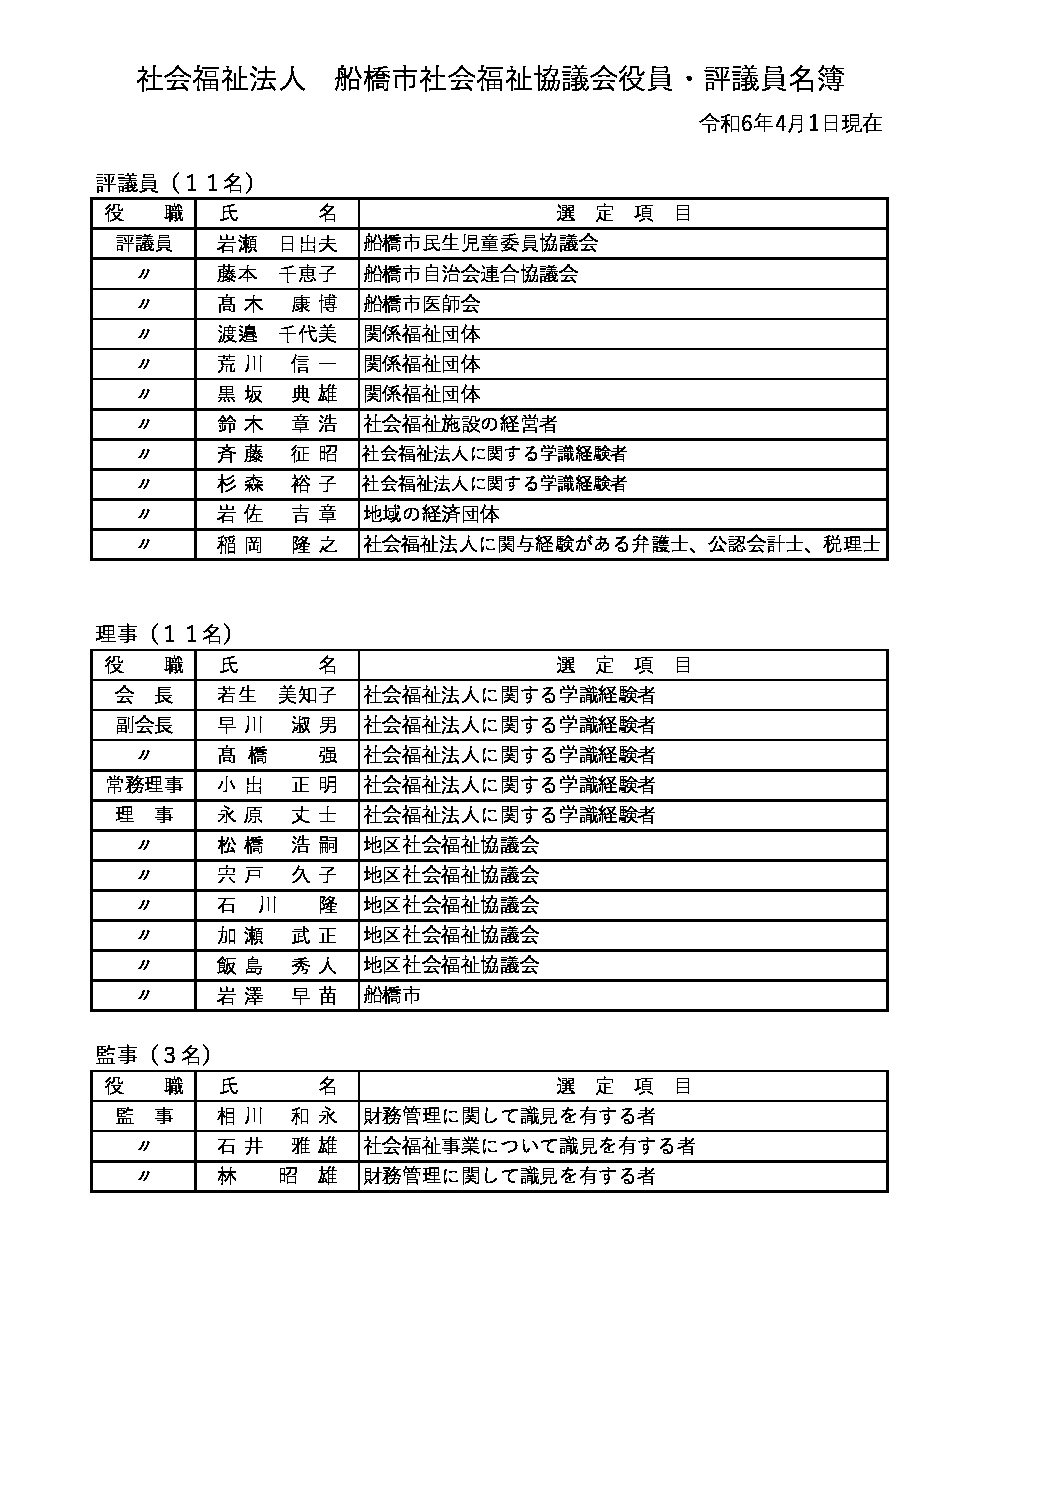 役員名簿（R6.4.1）